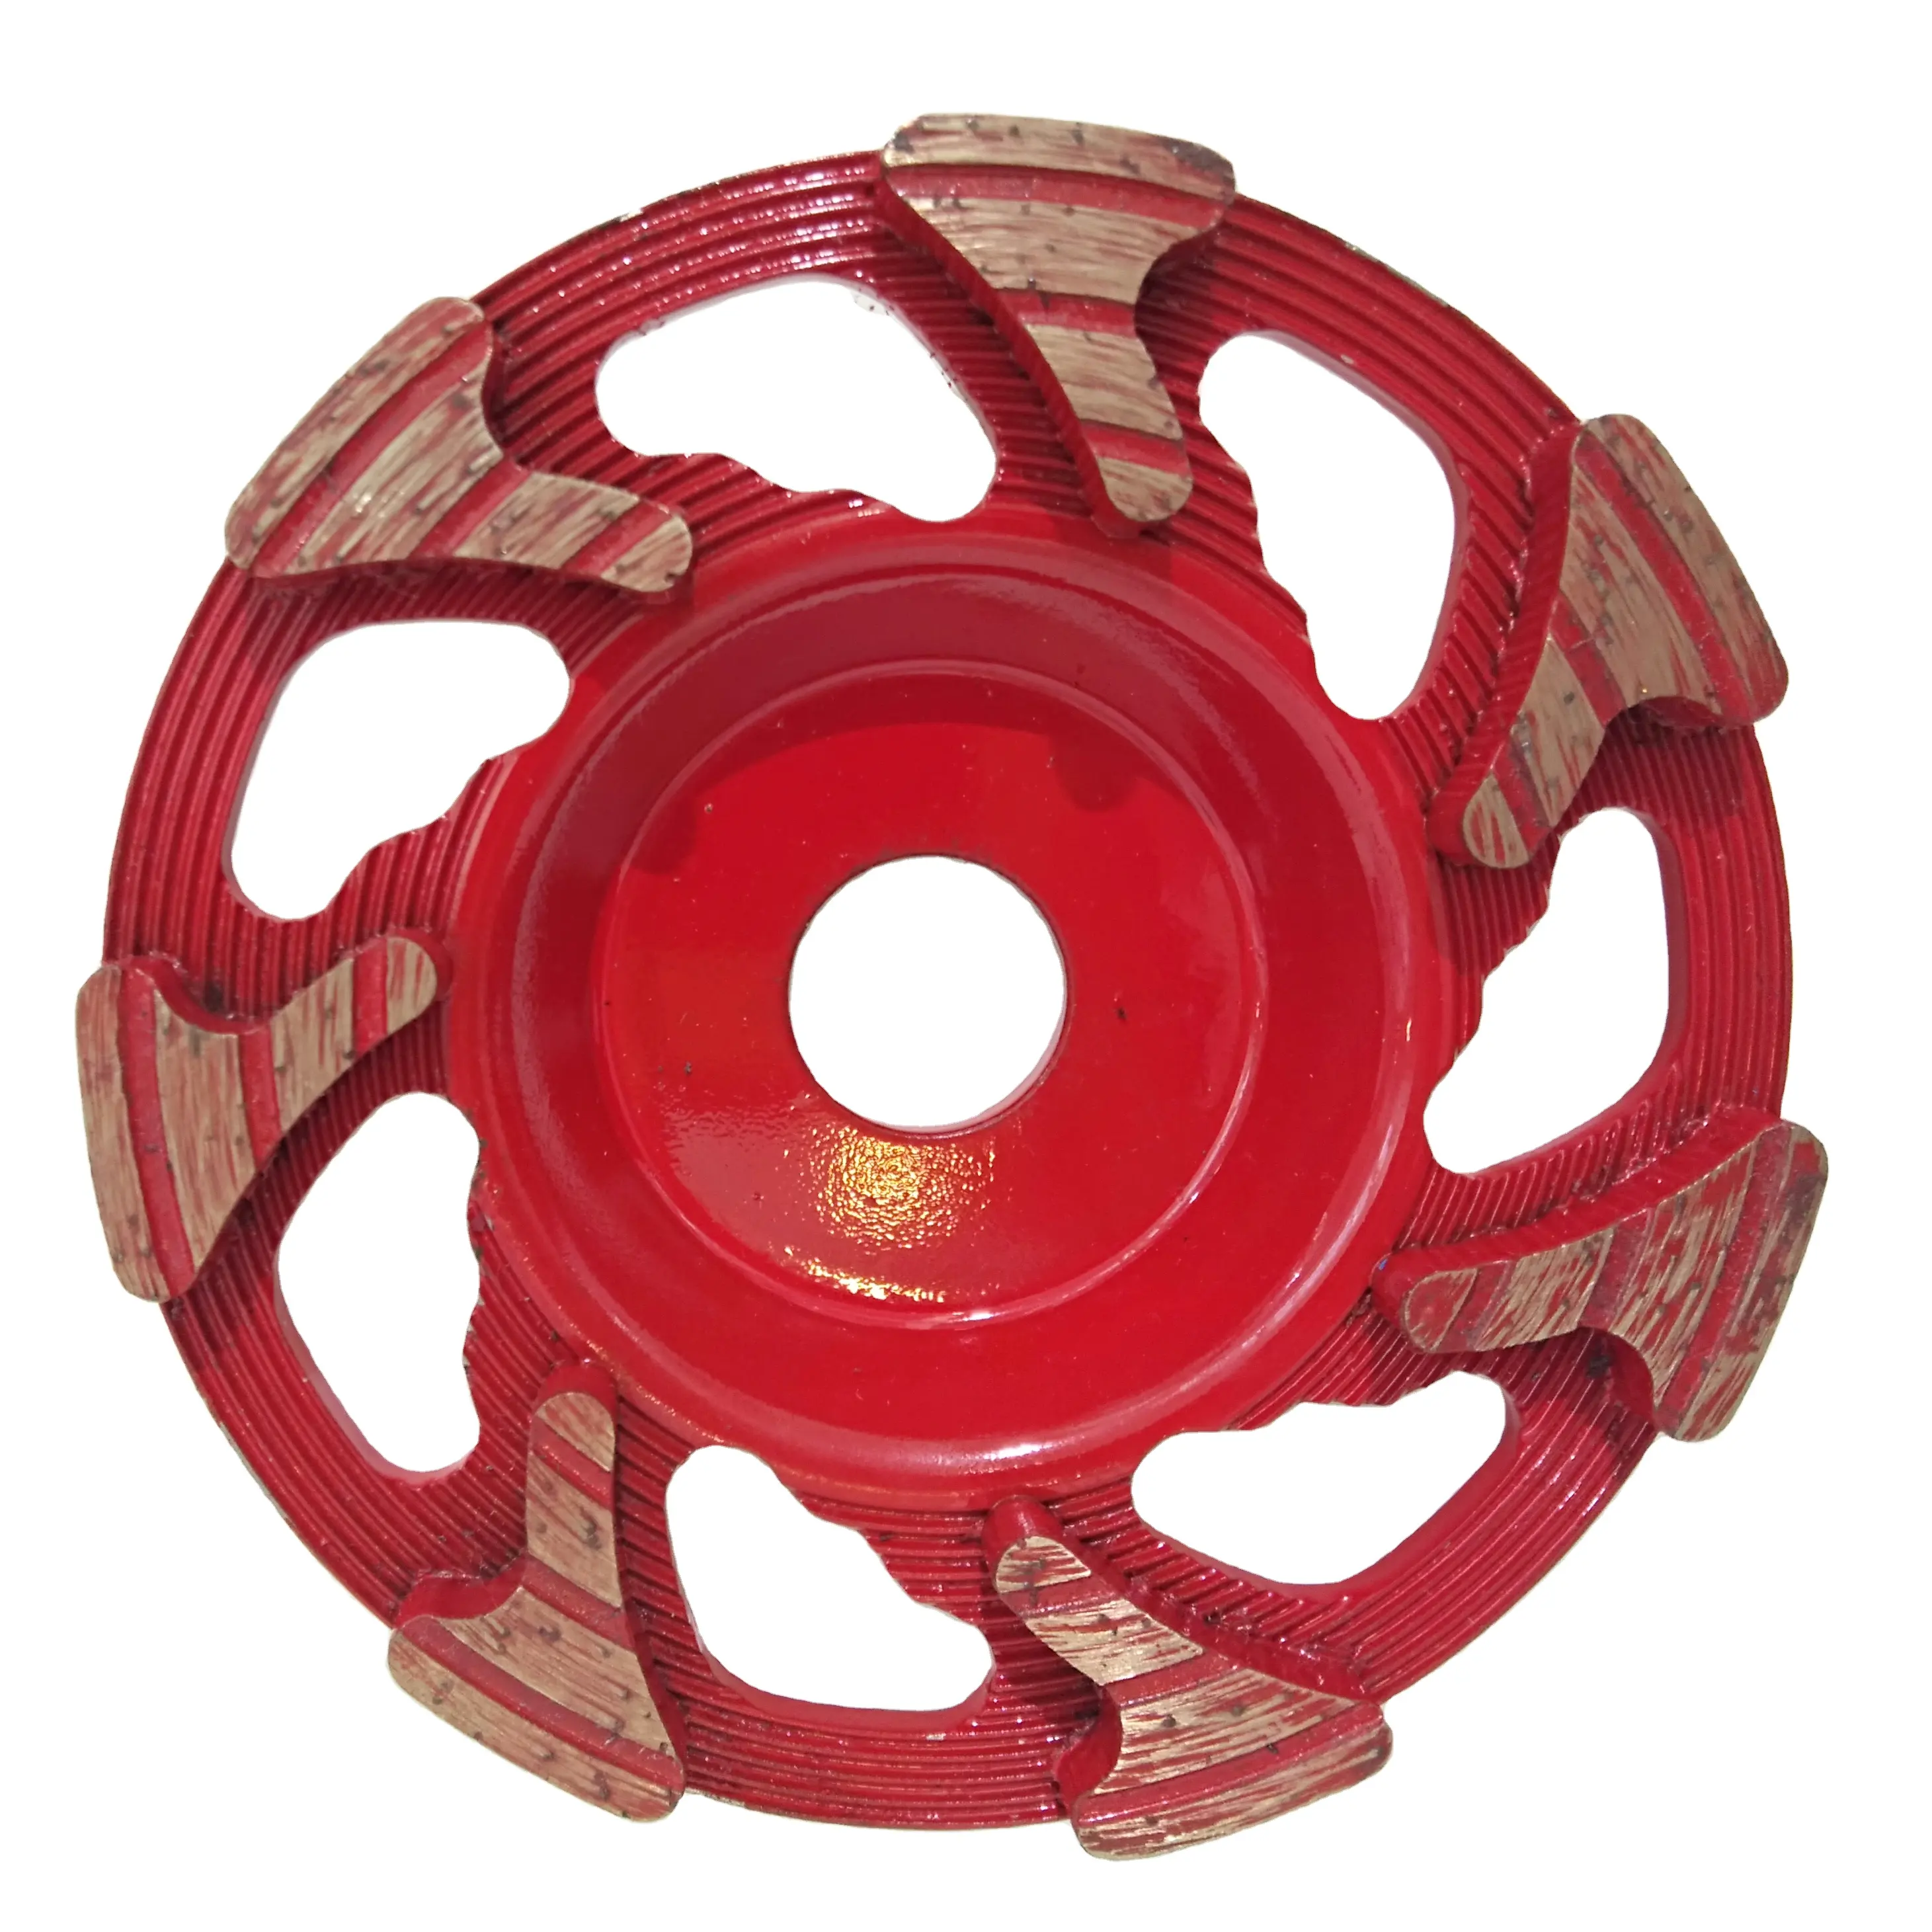 Roda abrasiva do copo 5-7 polegadas, ferramenta de moagem, roda de polimento, forma de copo para moagem de pedra